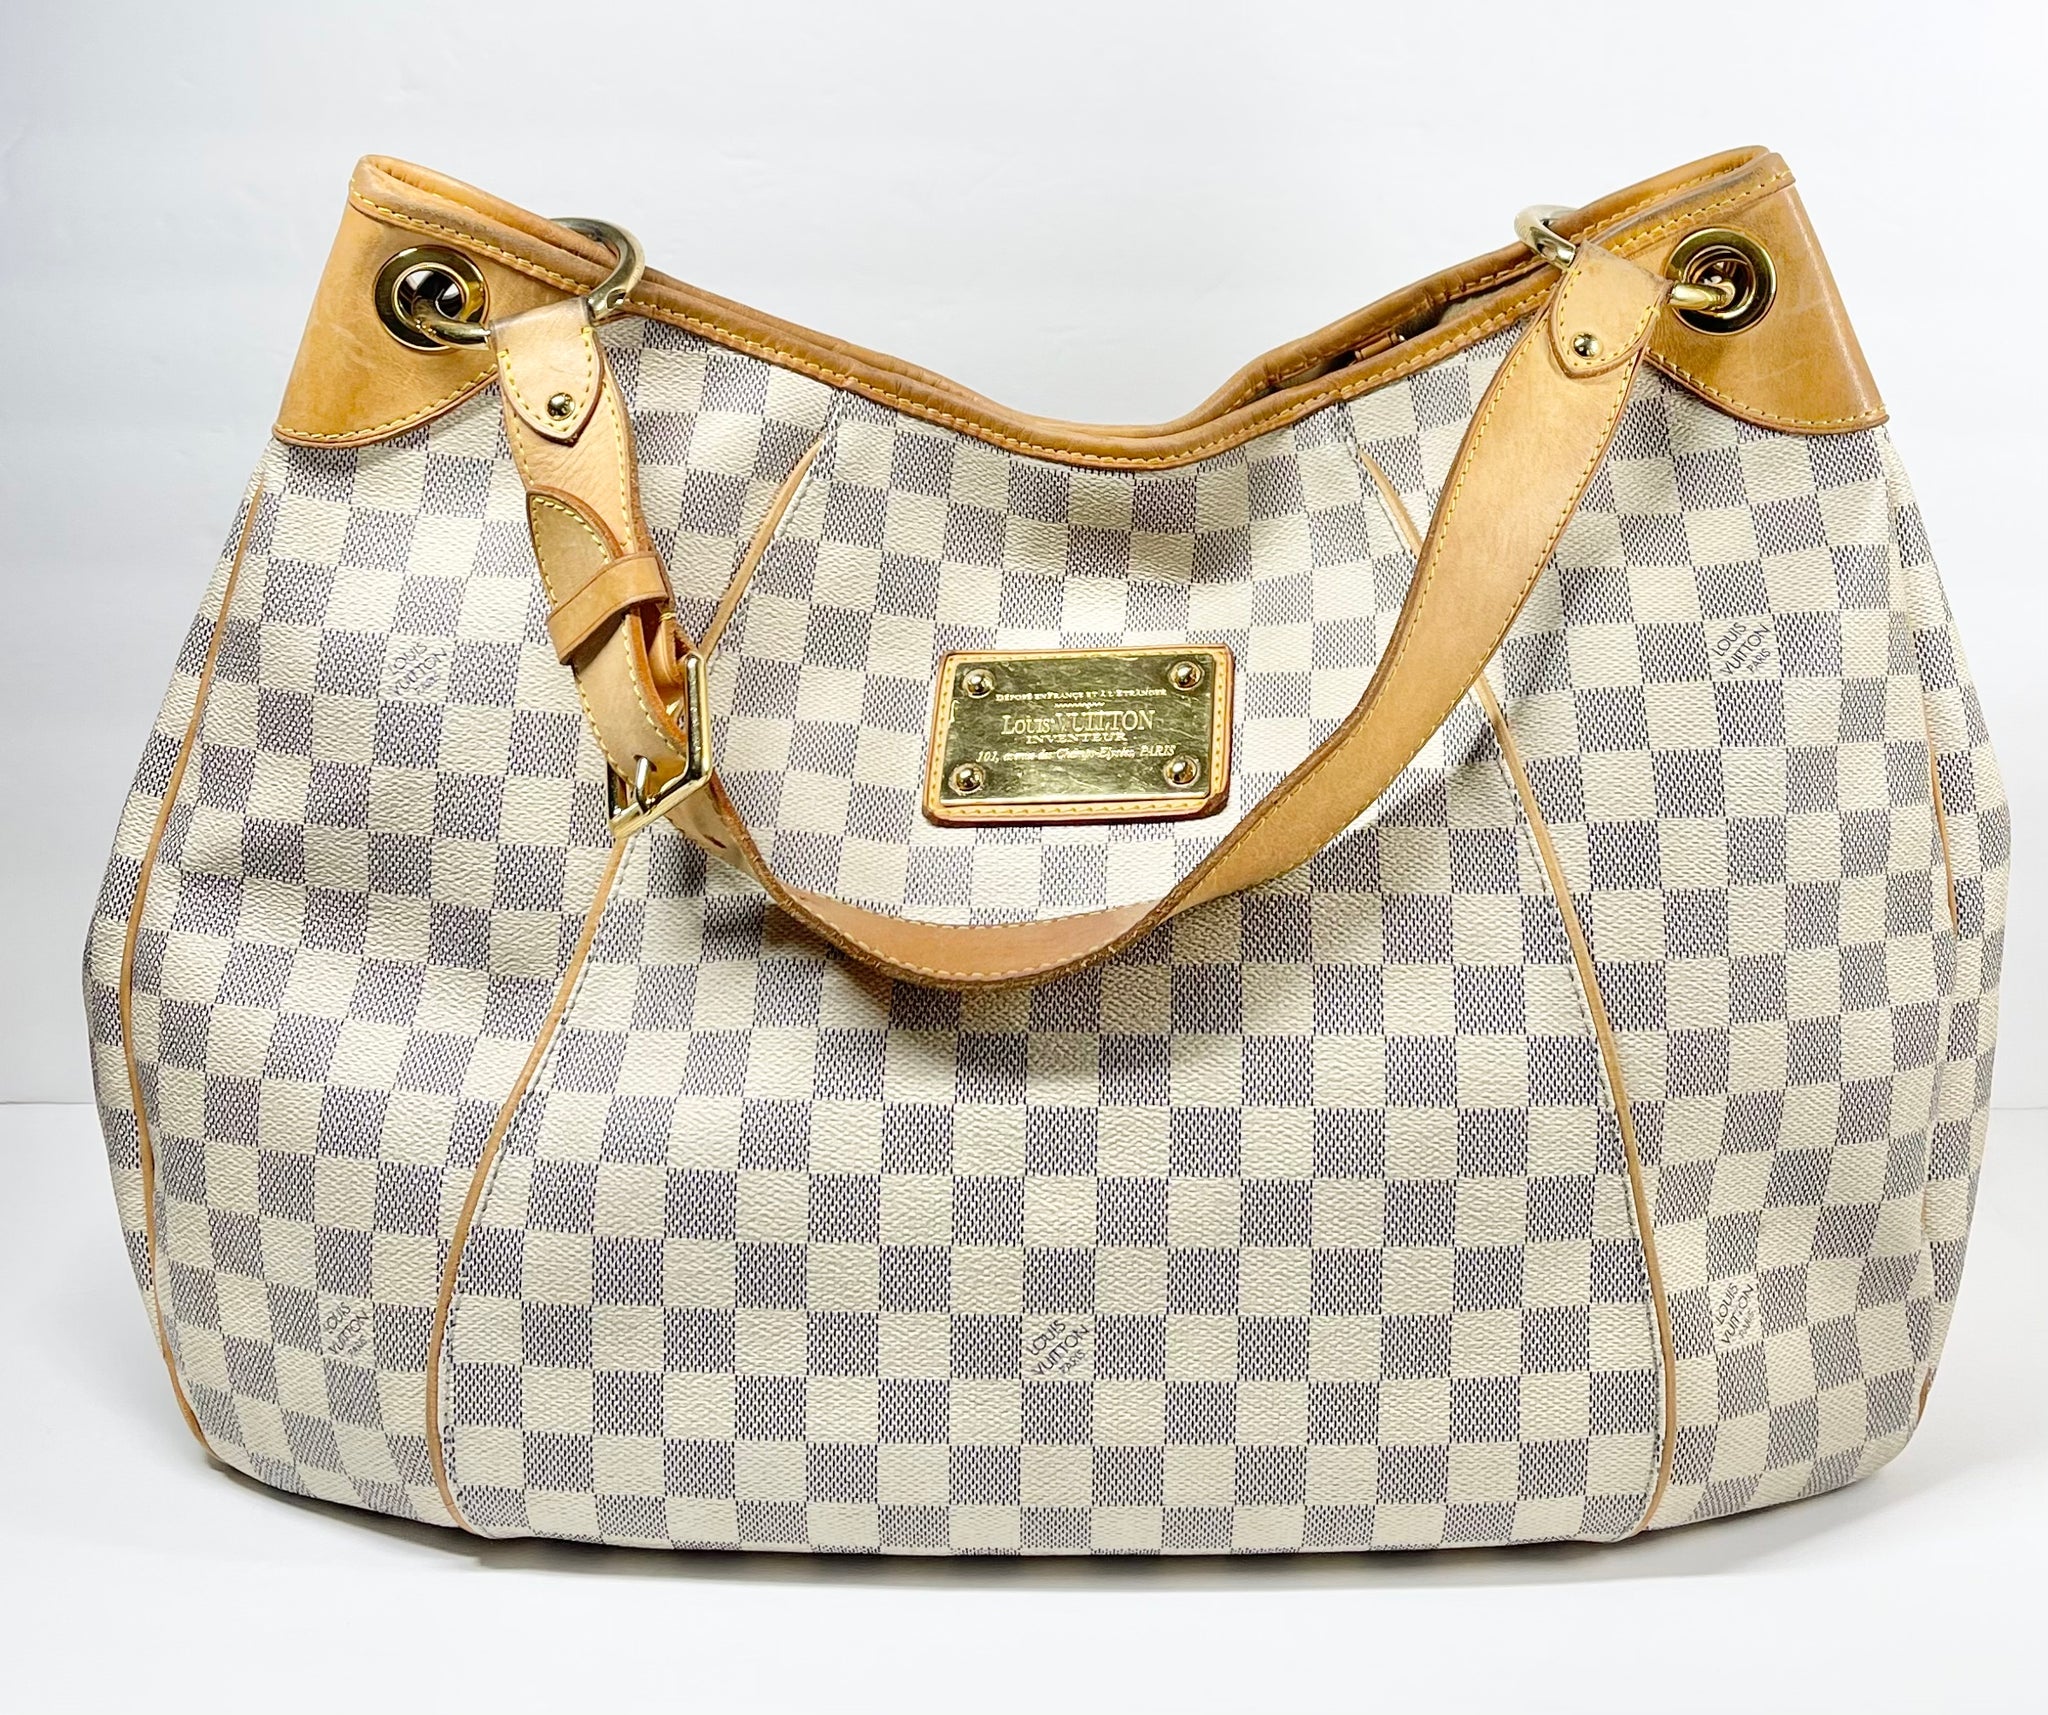 Louis Vuitton Galliera Pm White Damier Azur Canvas Shoulder Bag at